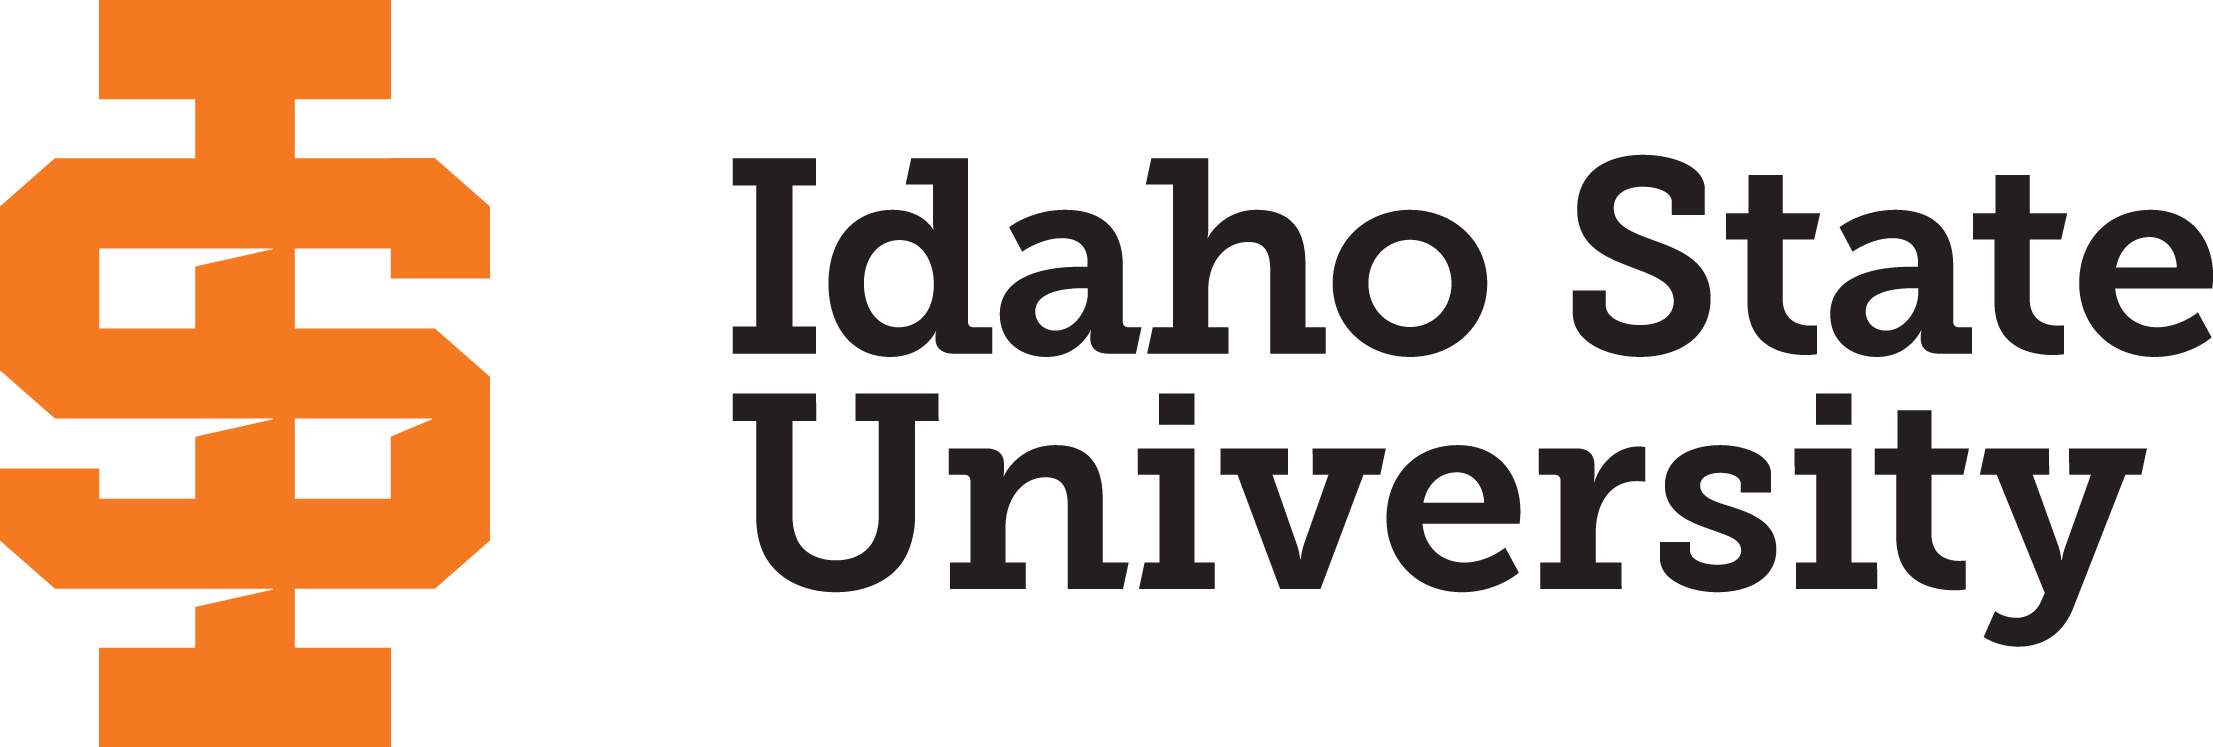 ISU stacked logo